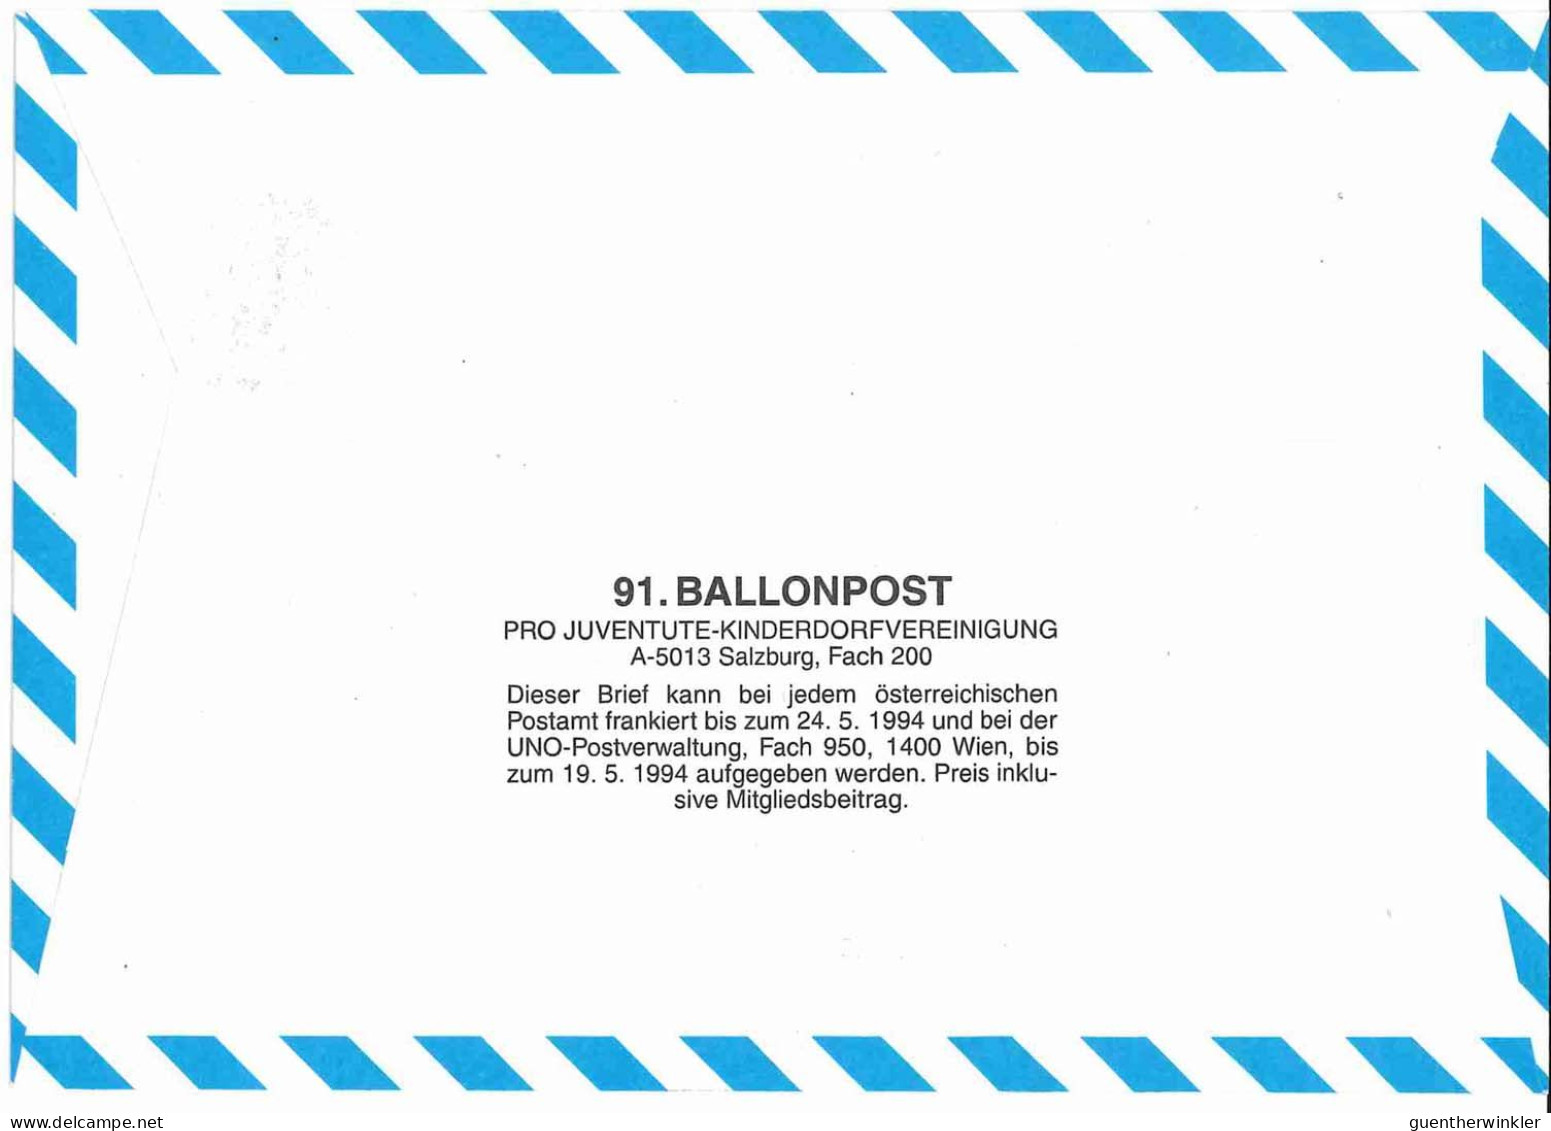 Regulärer Ballonpostflug Nr. 91a Der Pro Juventute [RBP91a] - Ballons